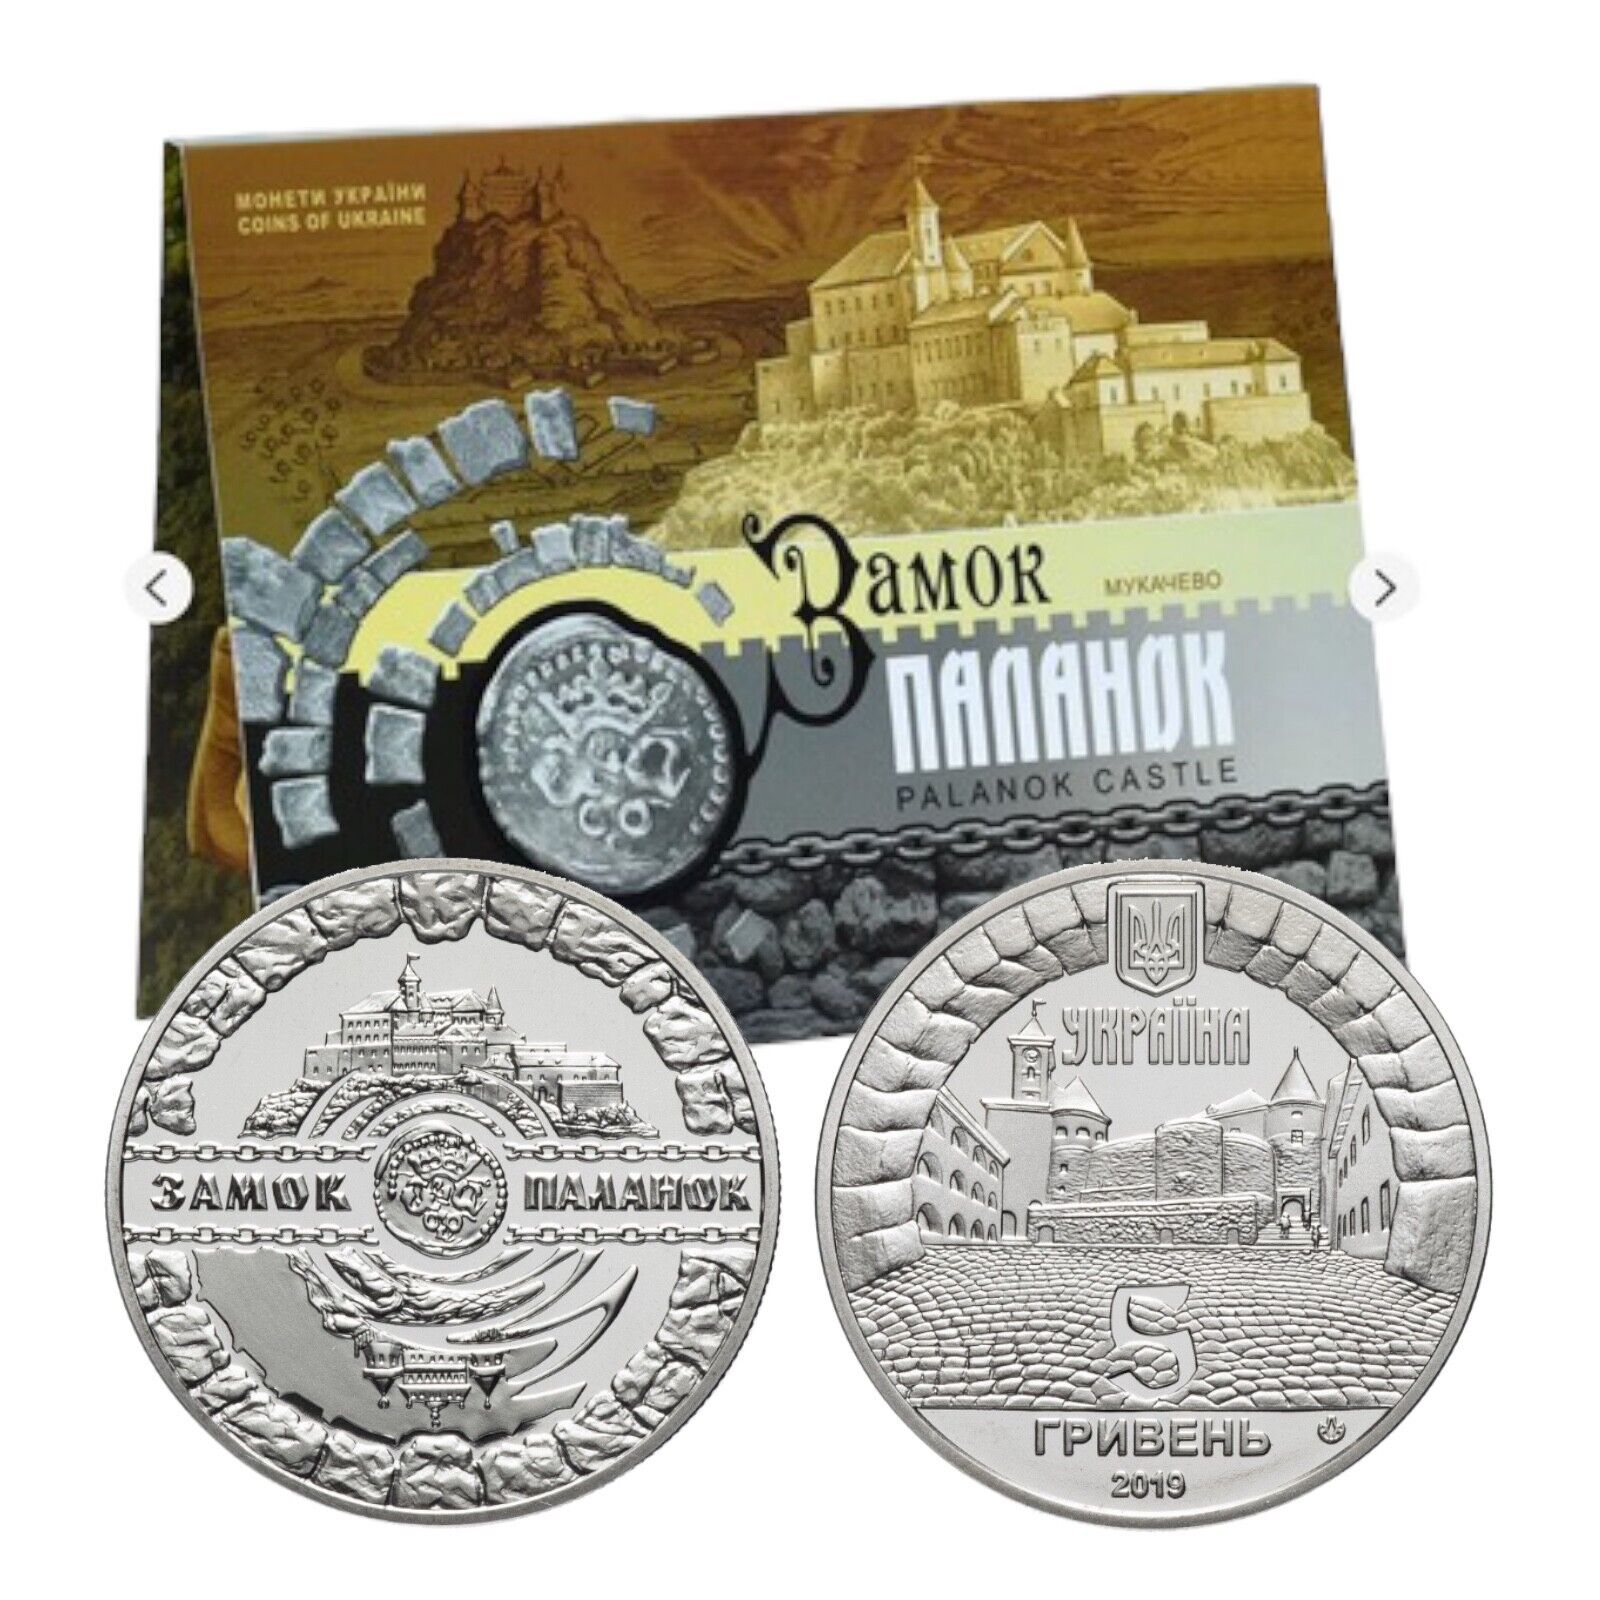 Ukrainian Souvenir Coin “Palanok Castle” Support for Ukraine